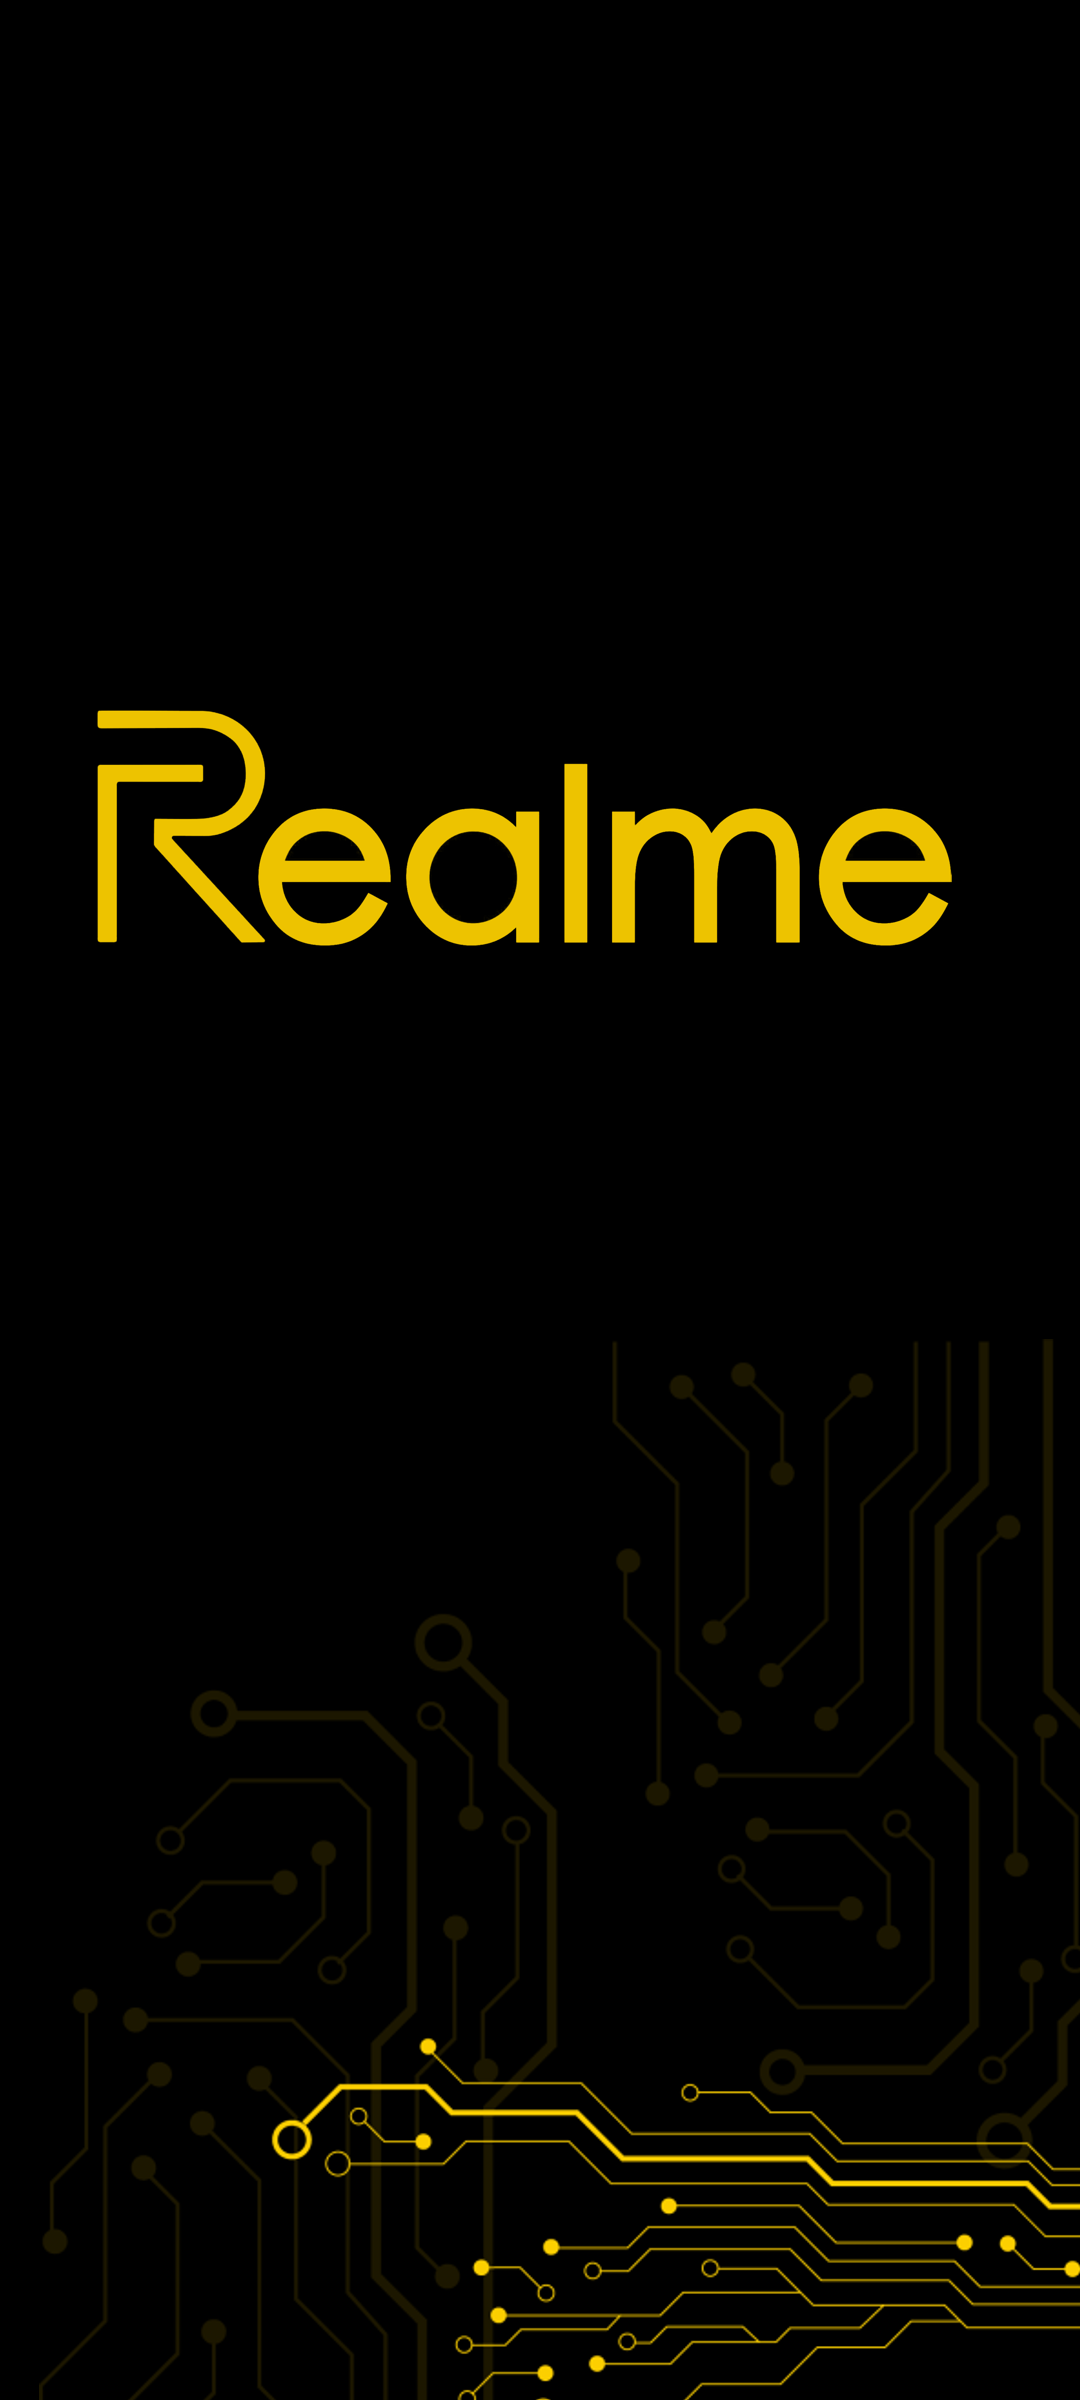 Realme Logo History - YouTube